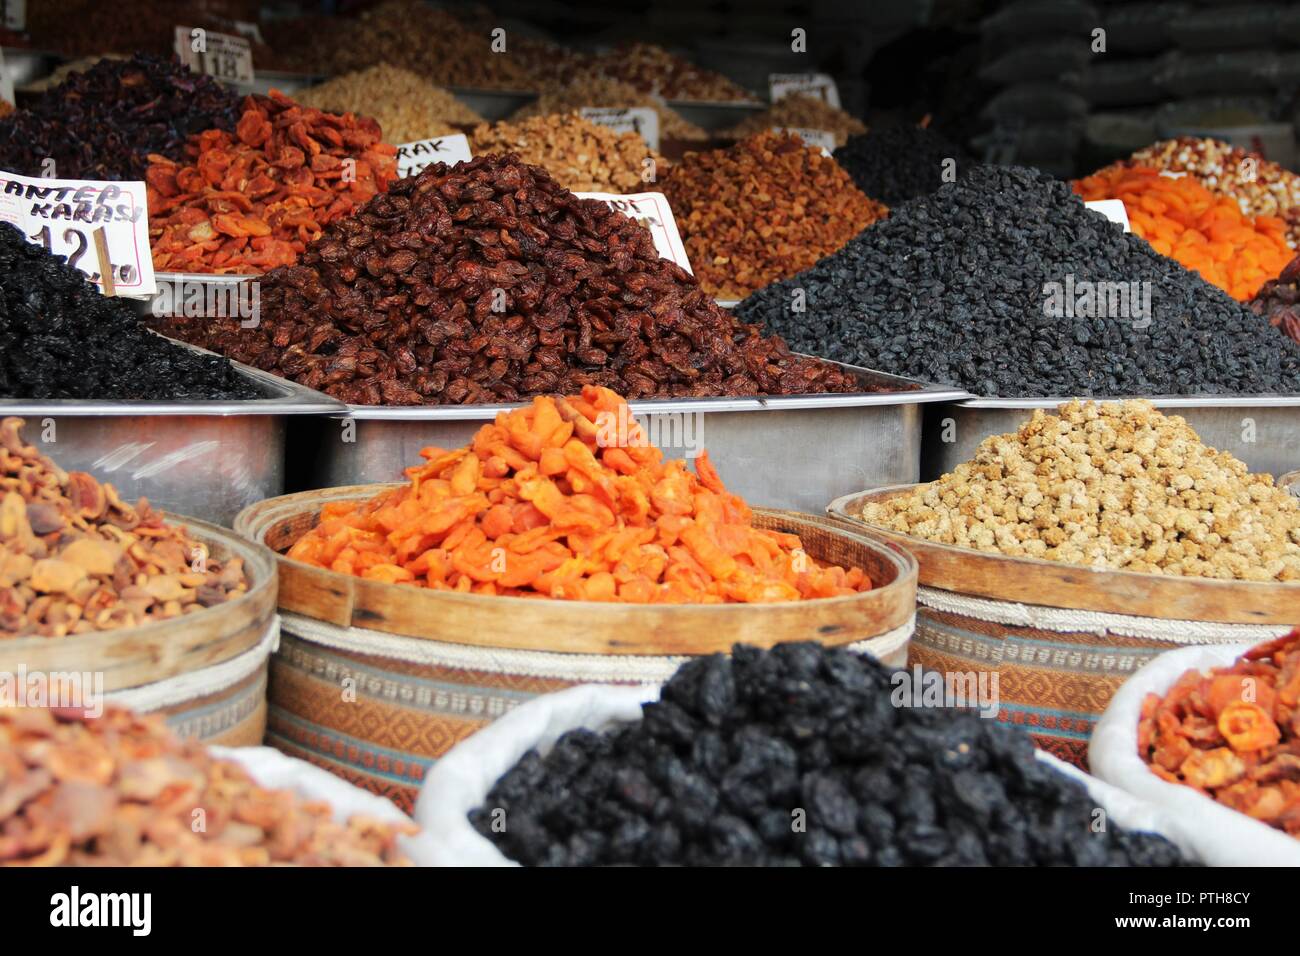 Street market in Turkey Stock Photo